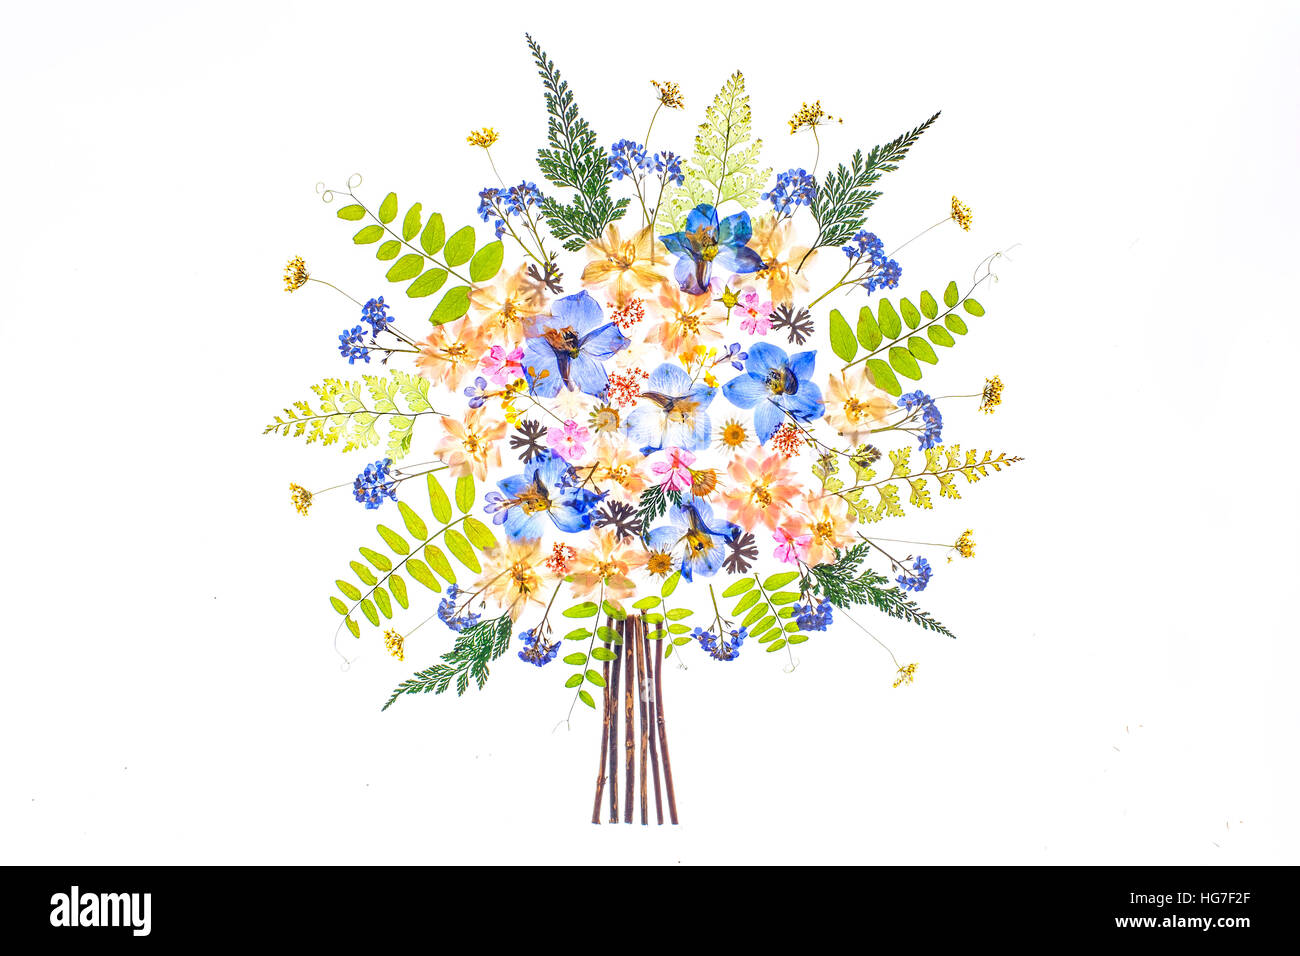 Ein High-Key-Bild von zarten getrocknet gepresste Blumen auf weißem Grund Stockfoto